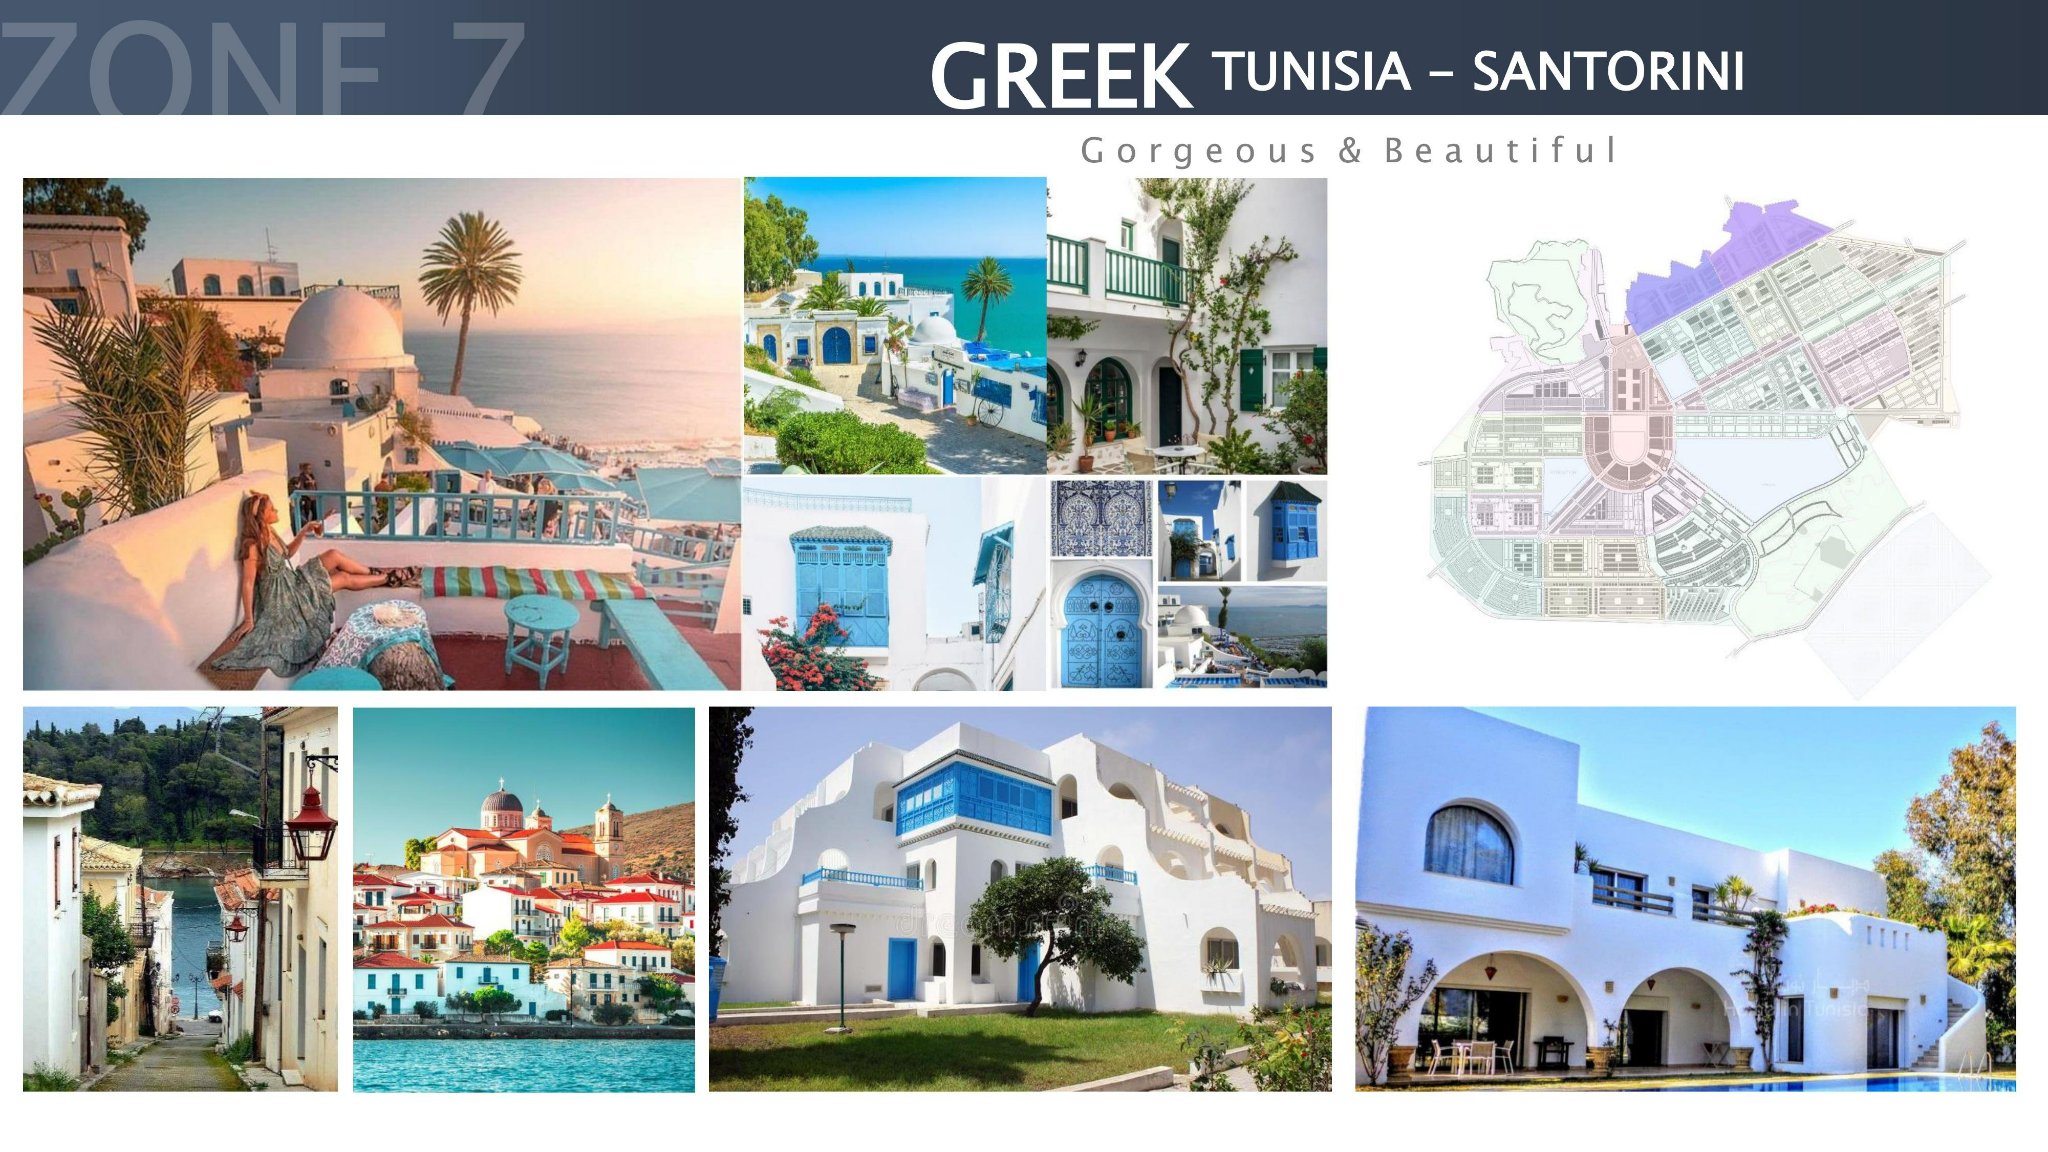 Kiến trúc Greek (Tunisia – Santorini)